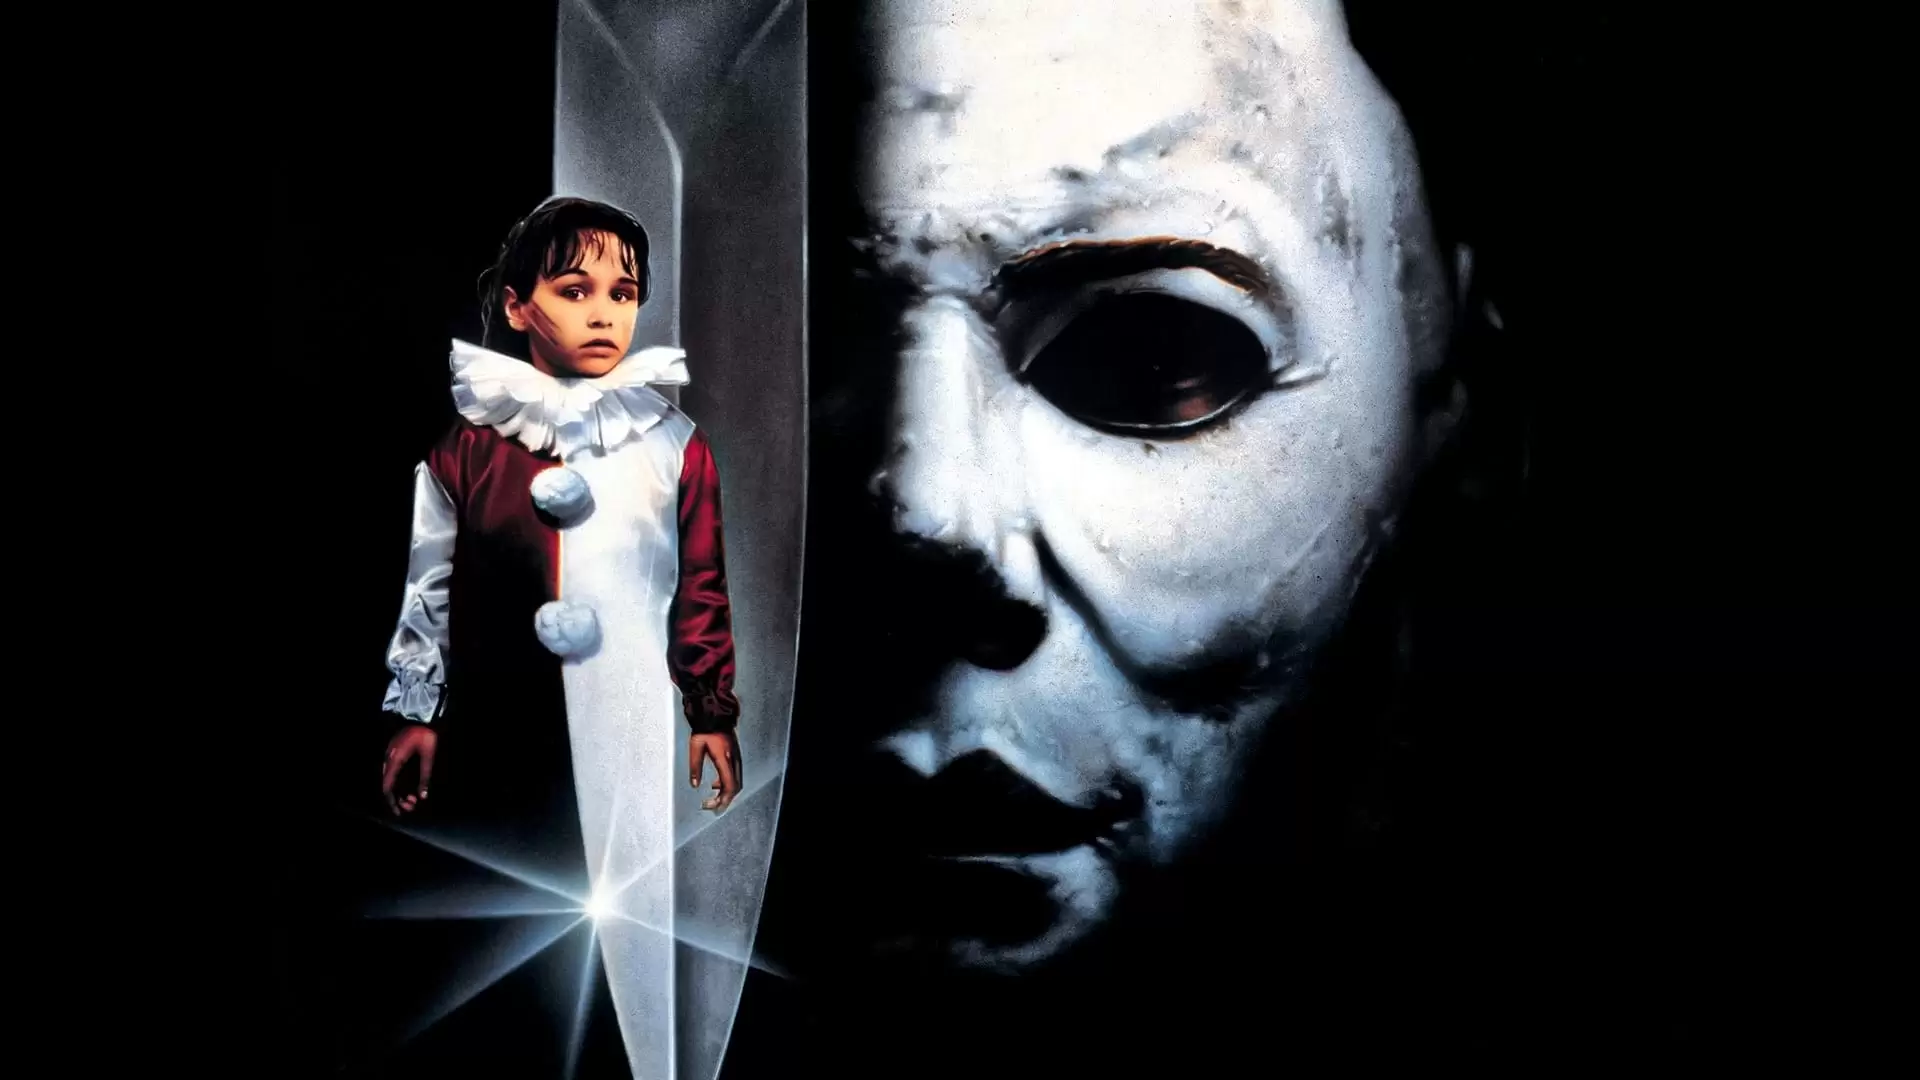 دانلود فیلم Halloween 5 1989 (هالووین ۵: انتقام مایکل مایرز) با زیرنویس فارسی